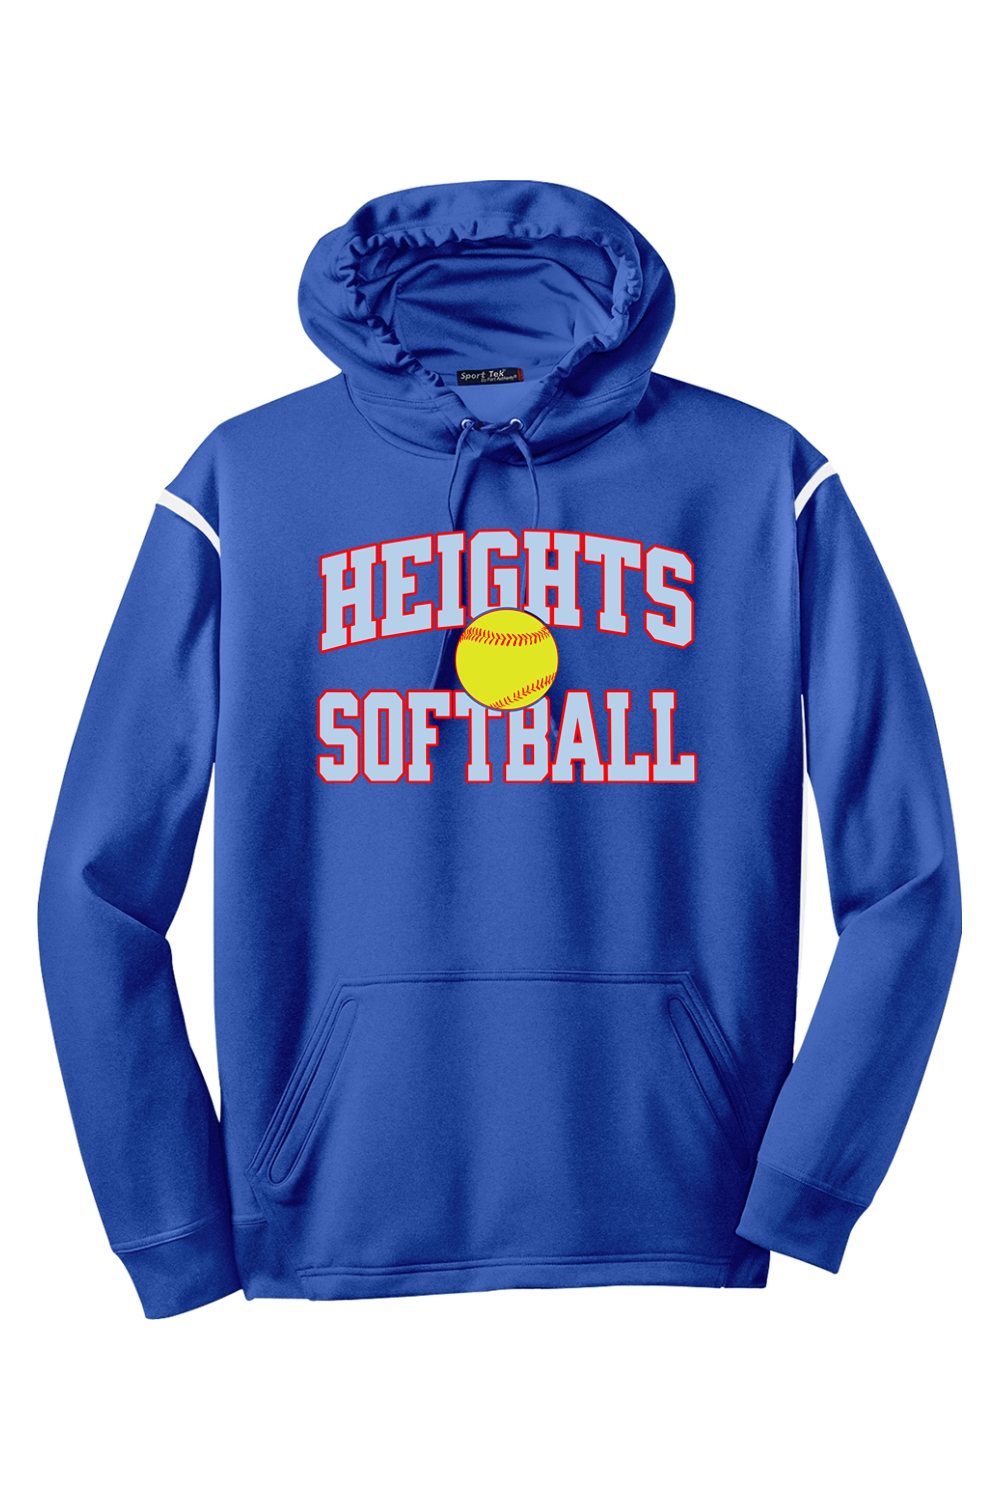 Heights Softball - Colorblock Hooded Sweatshirt - Yinzylvania